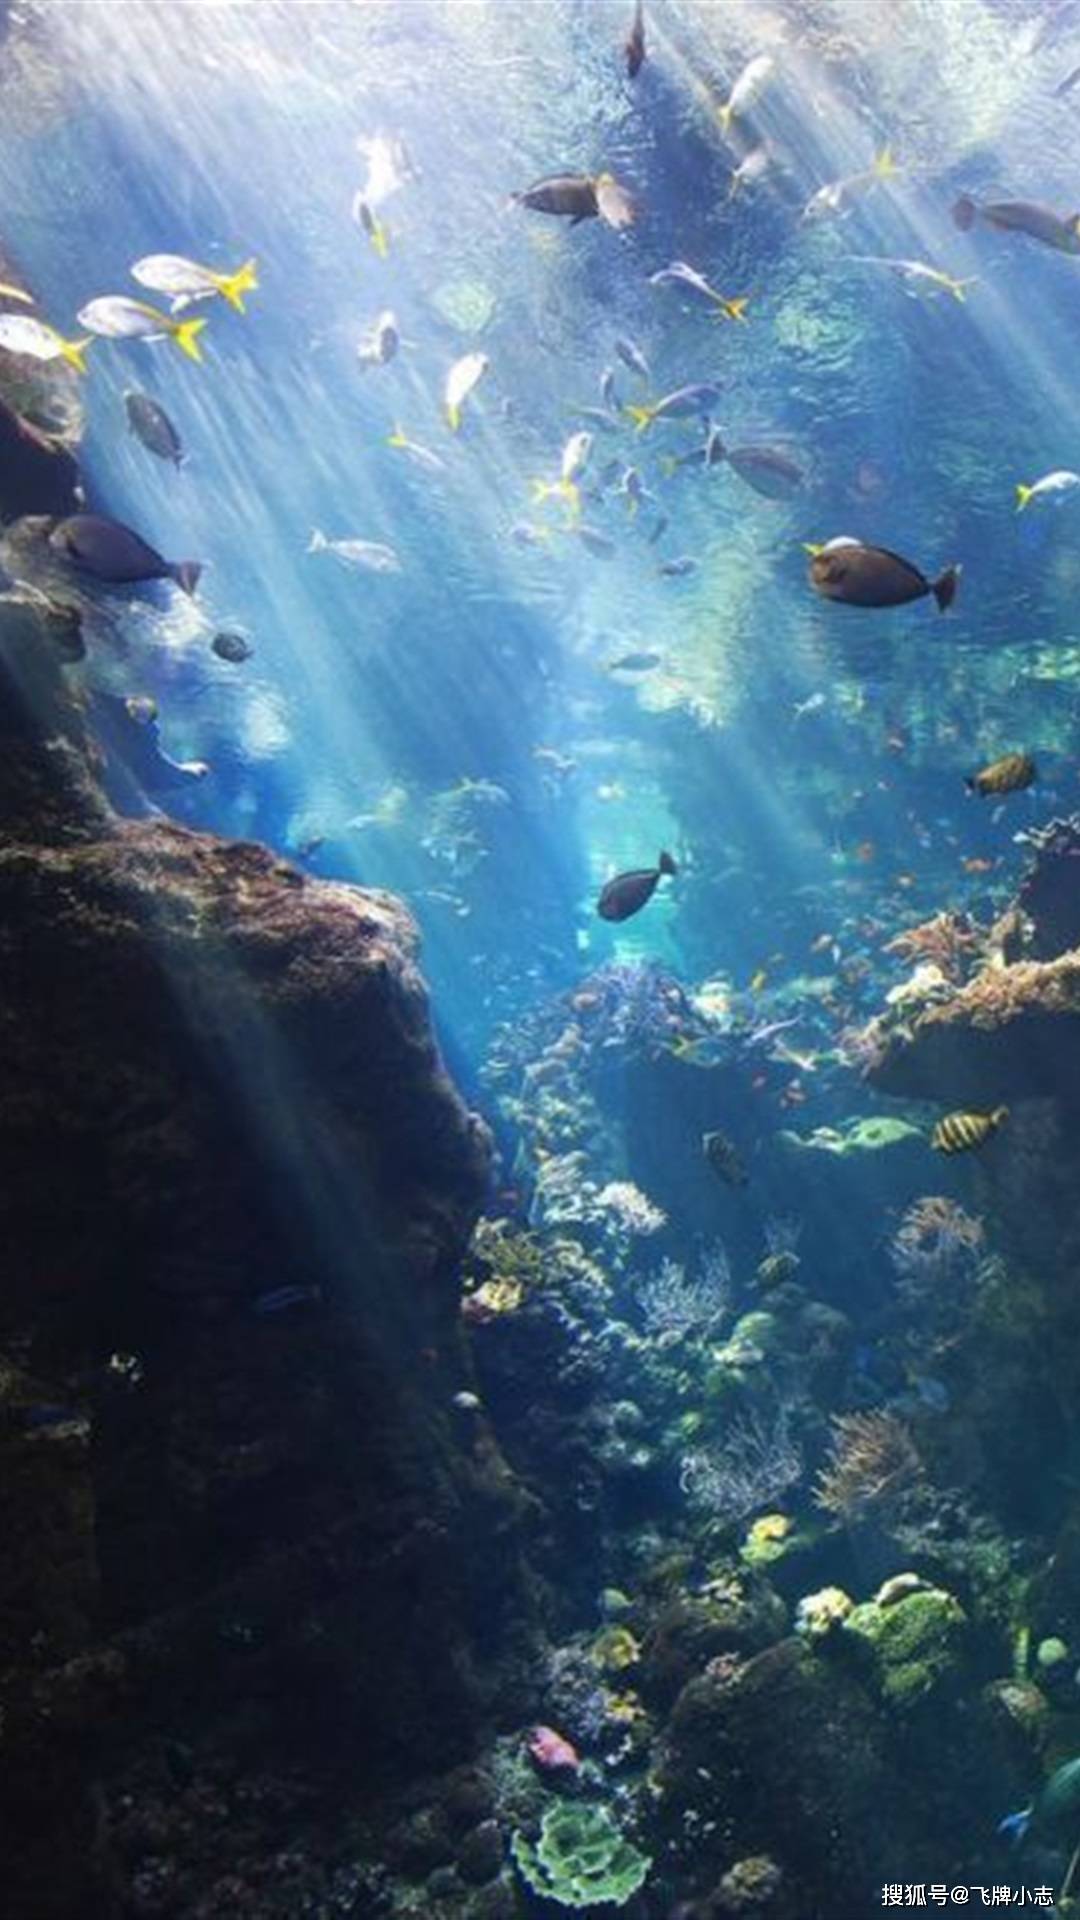 海底一万米到底存在何种生物